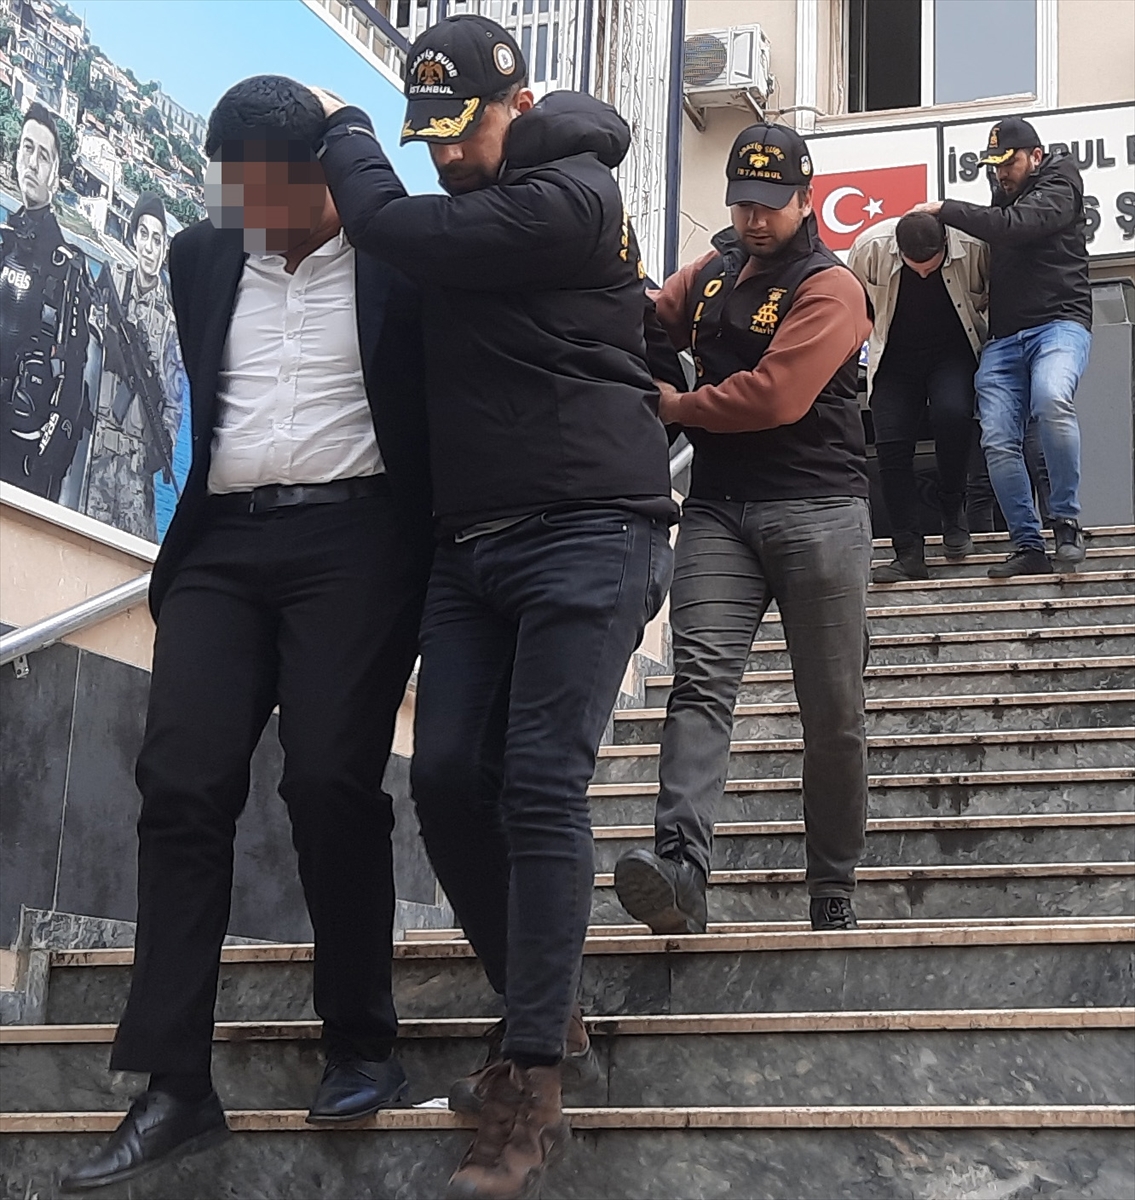 İstanbul'da satın alma bahanesiyle pırlanta yüzük çalan 3 şüpheli yakalandı